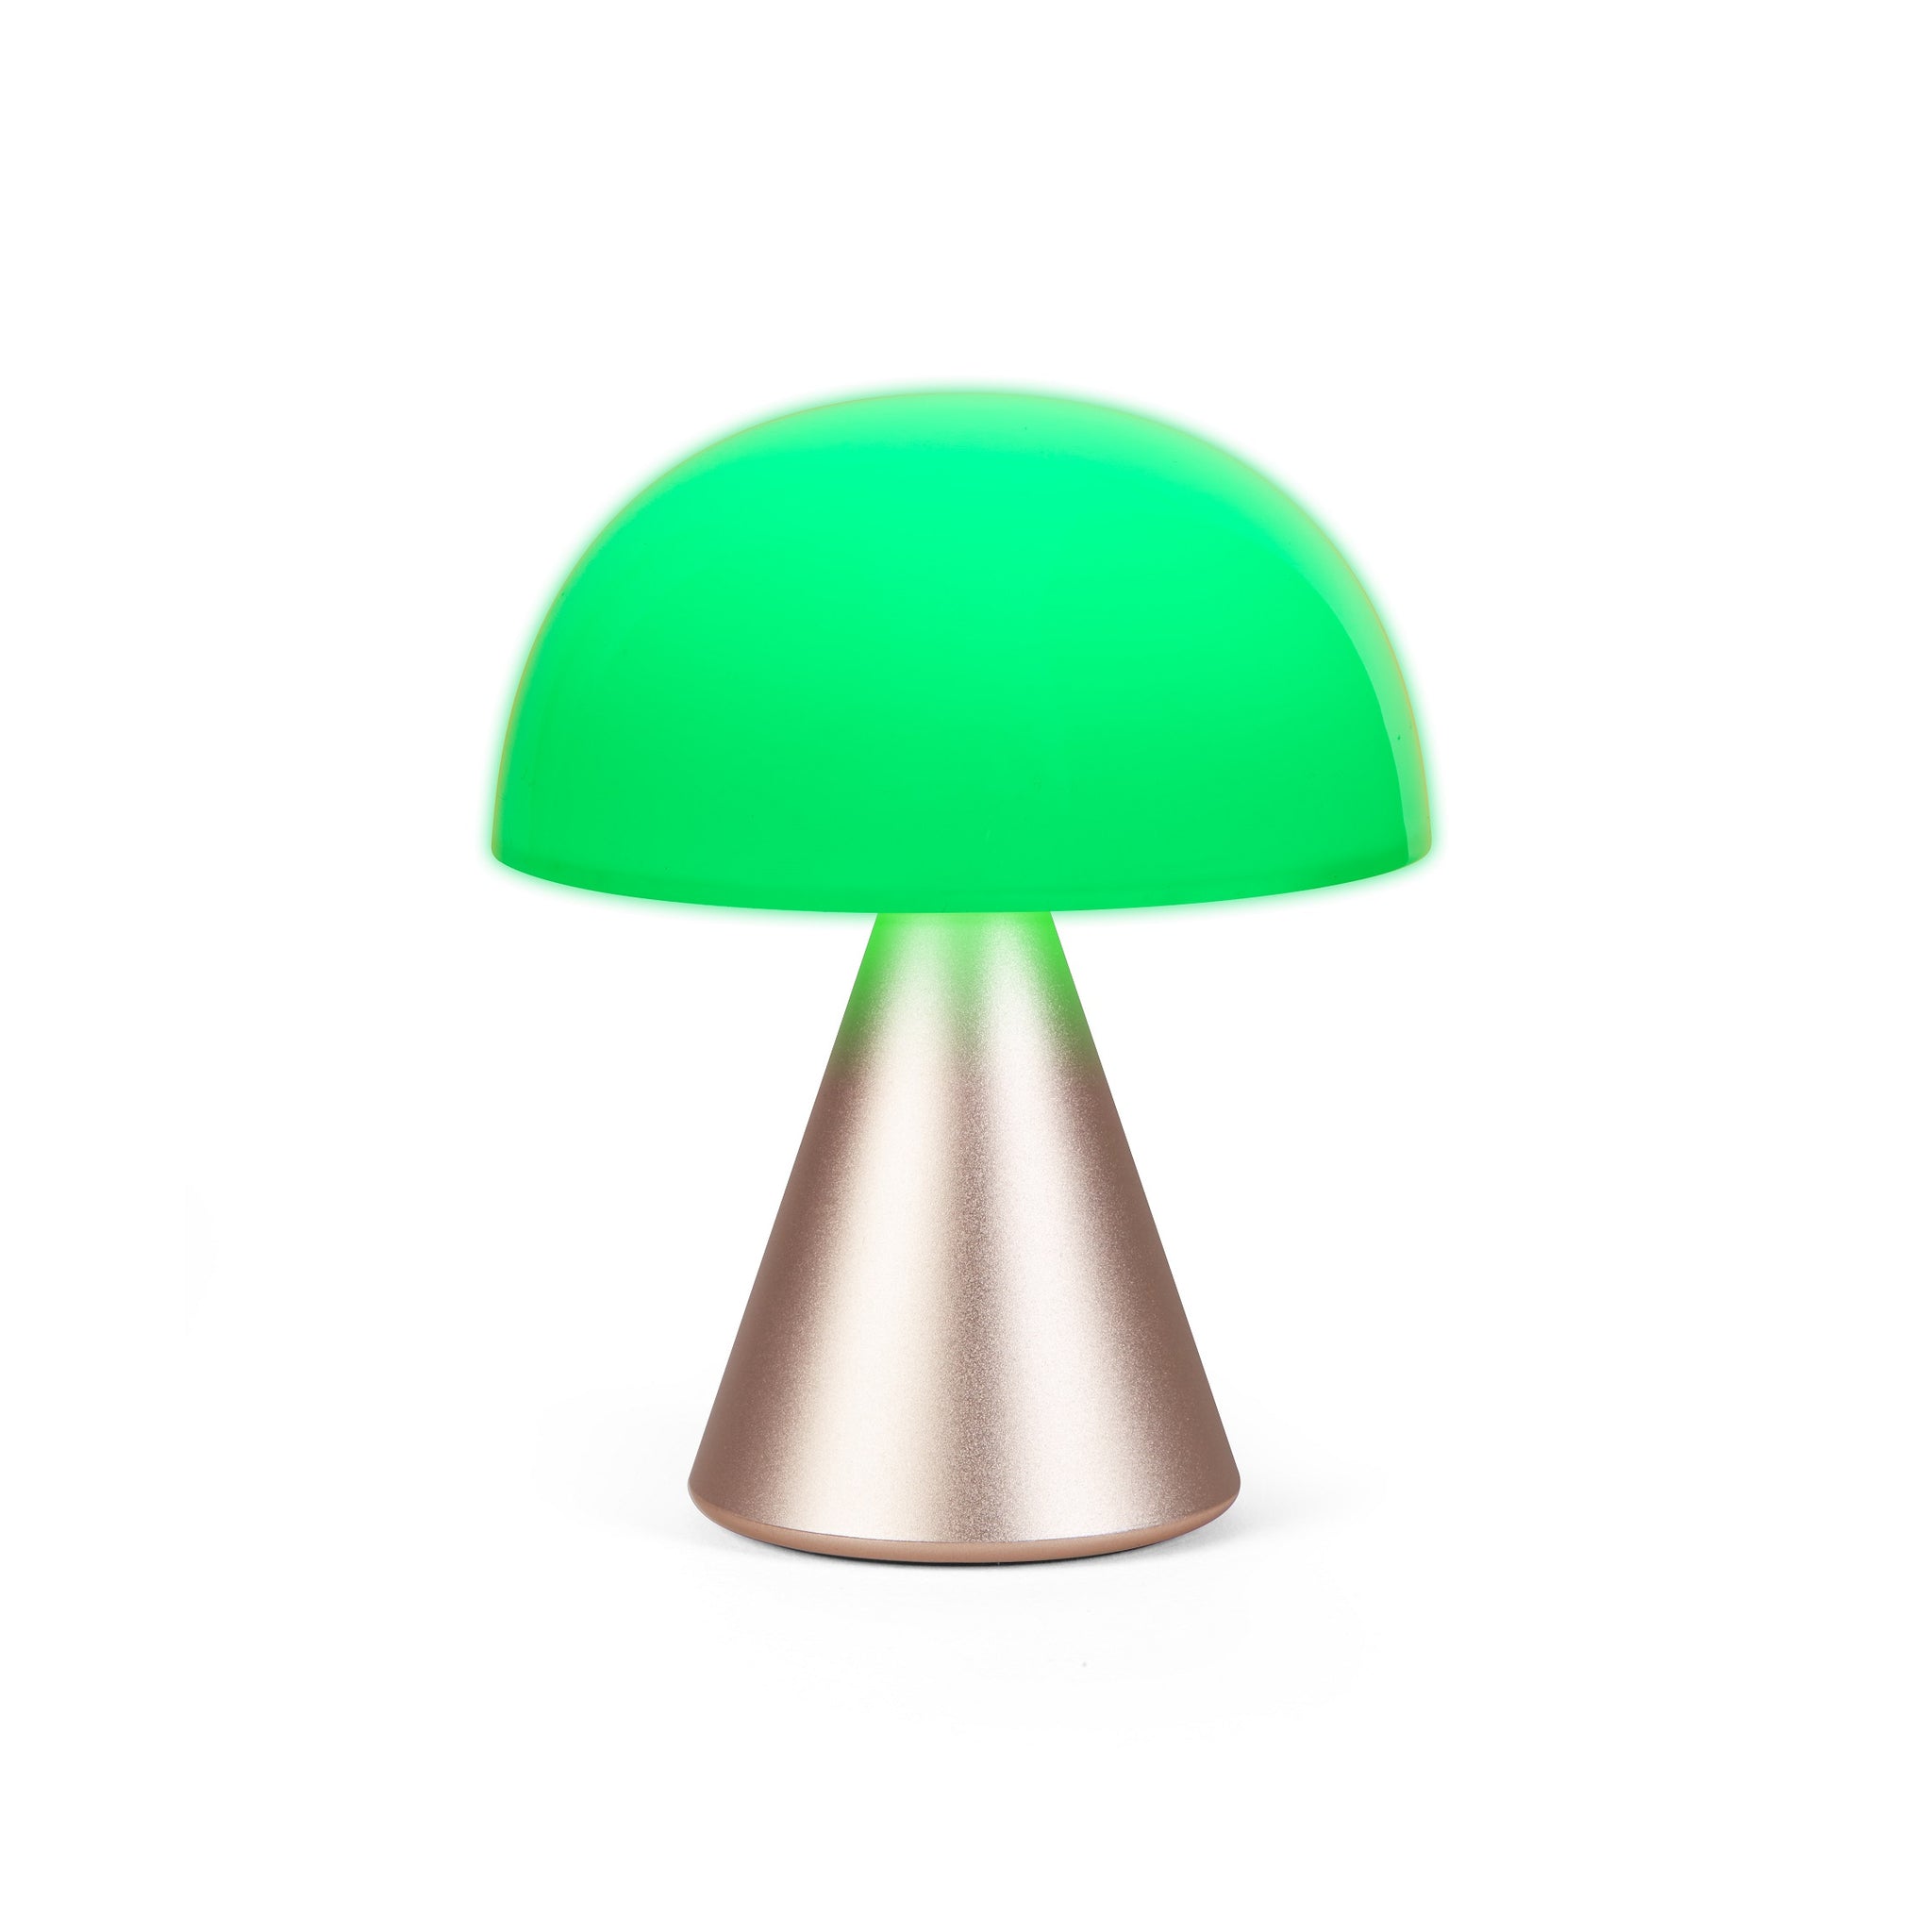 Lexon Mina Goud│Oplaadbare LED-Lamp│art. LH64MD│vooraanzicht met groen licht aan